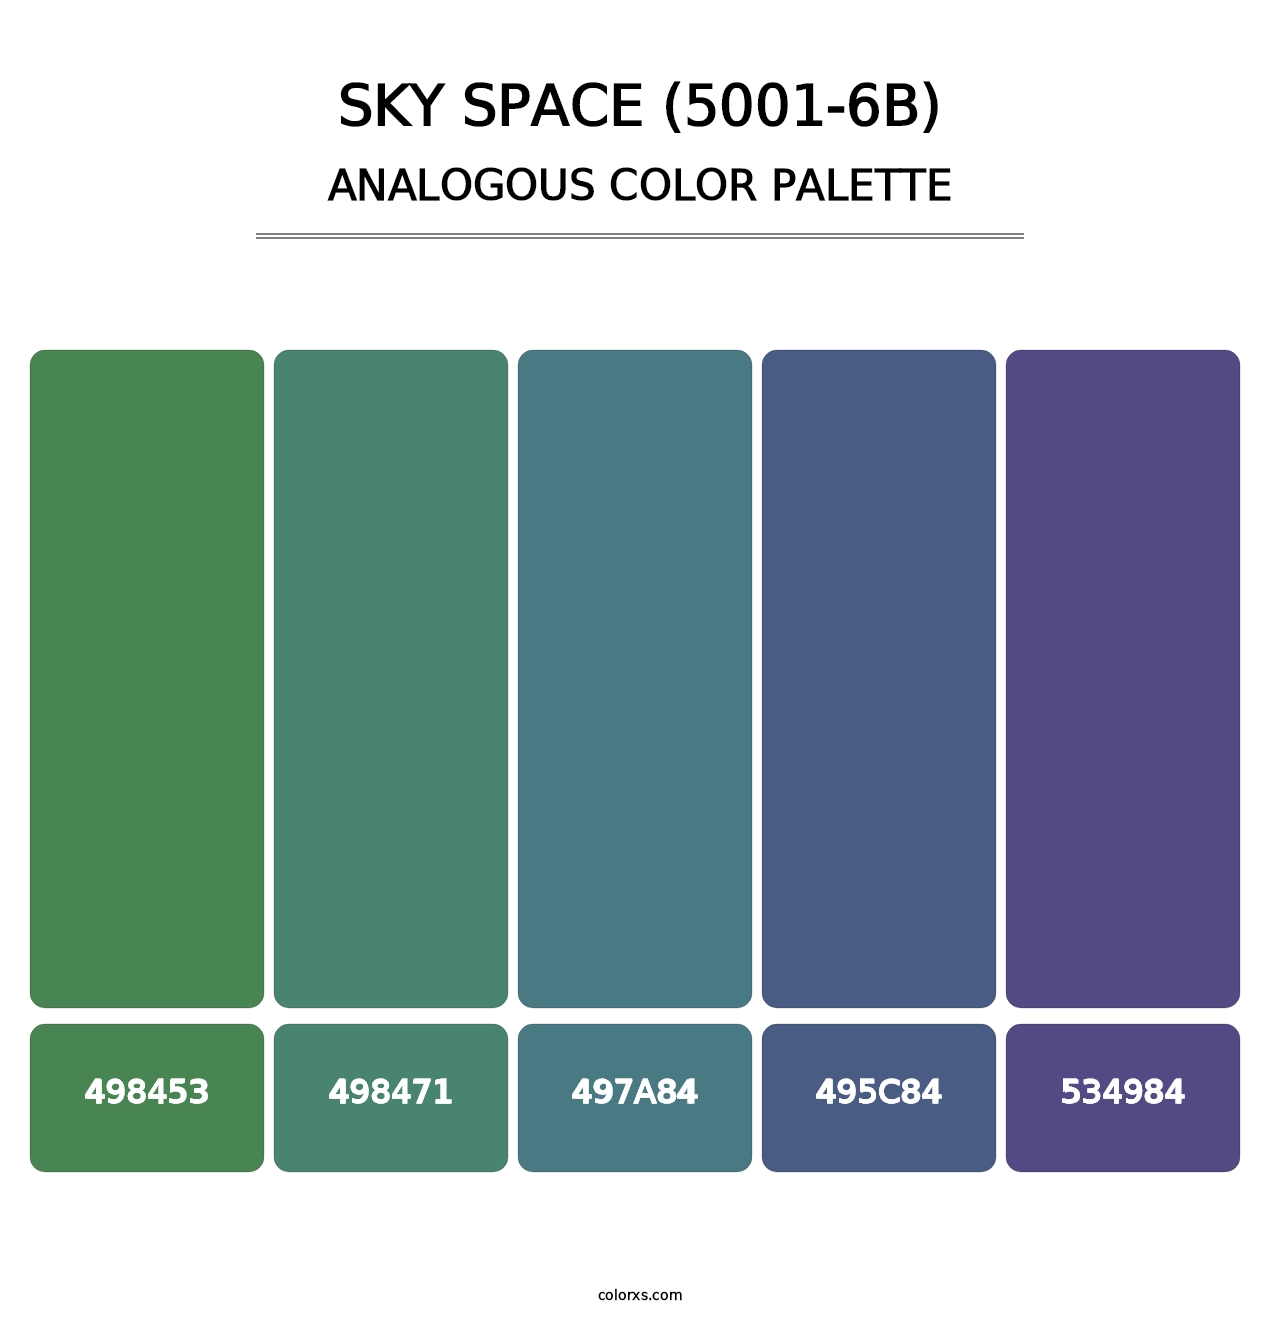 Sky Space (5001-6B) - Analogous Color Palette